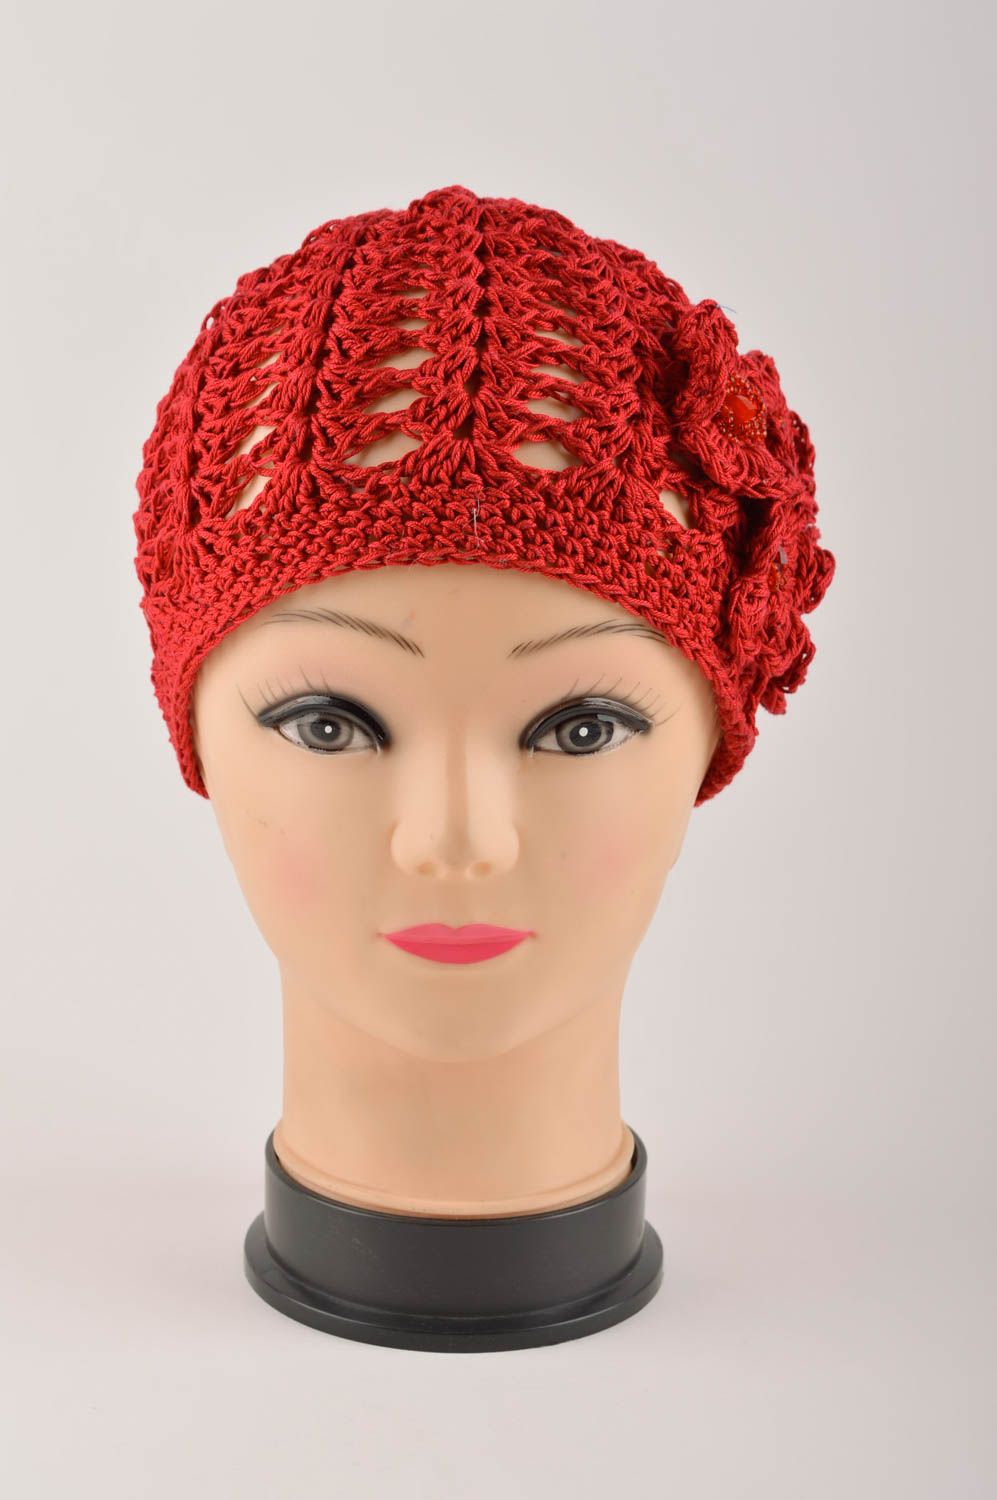 Handmade hat for girls warm woolen hat for winter designer baby hat gift ideas photo 3